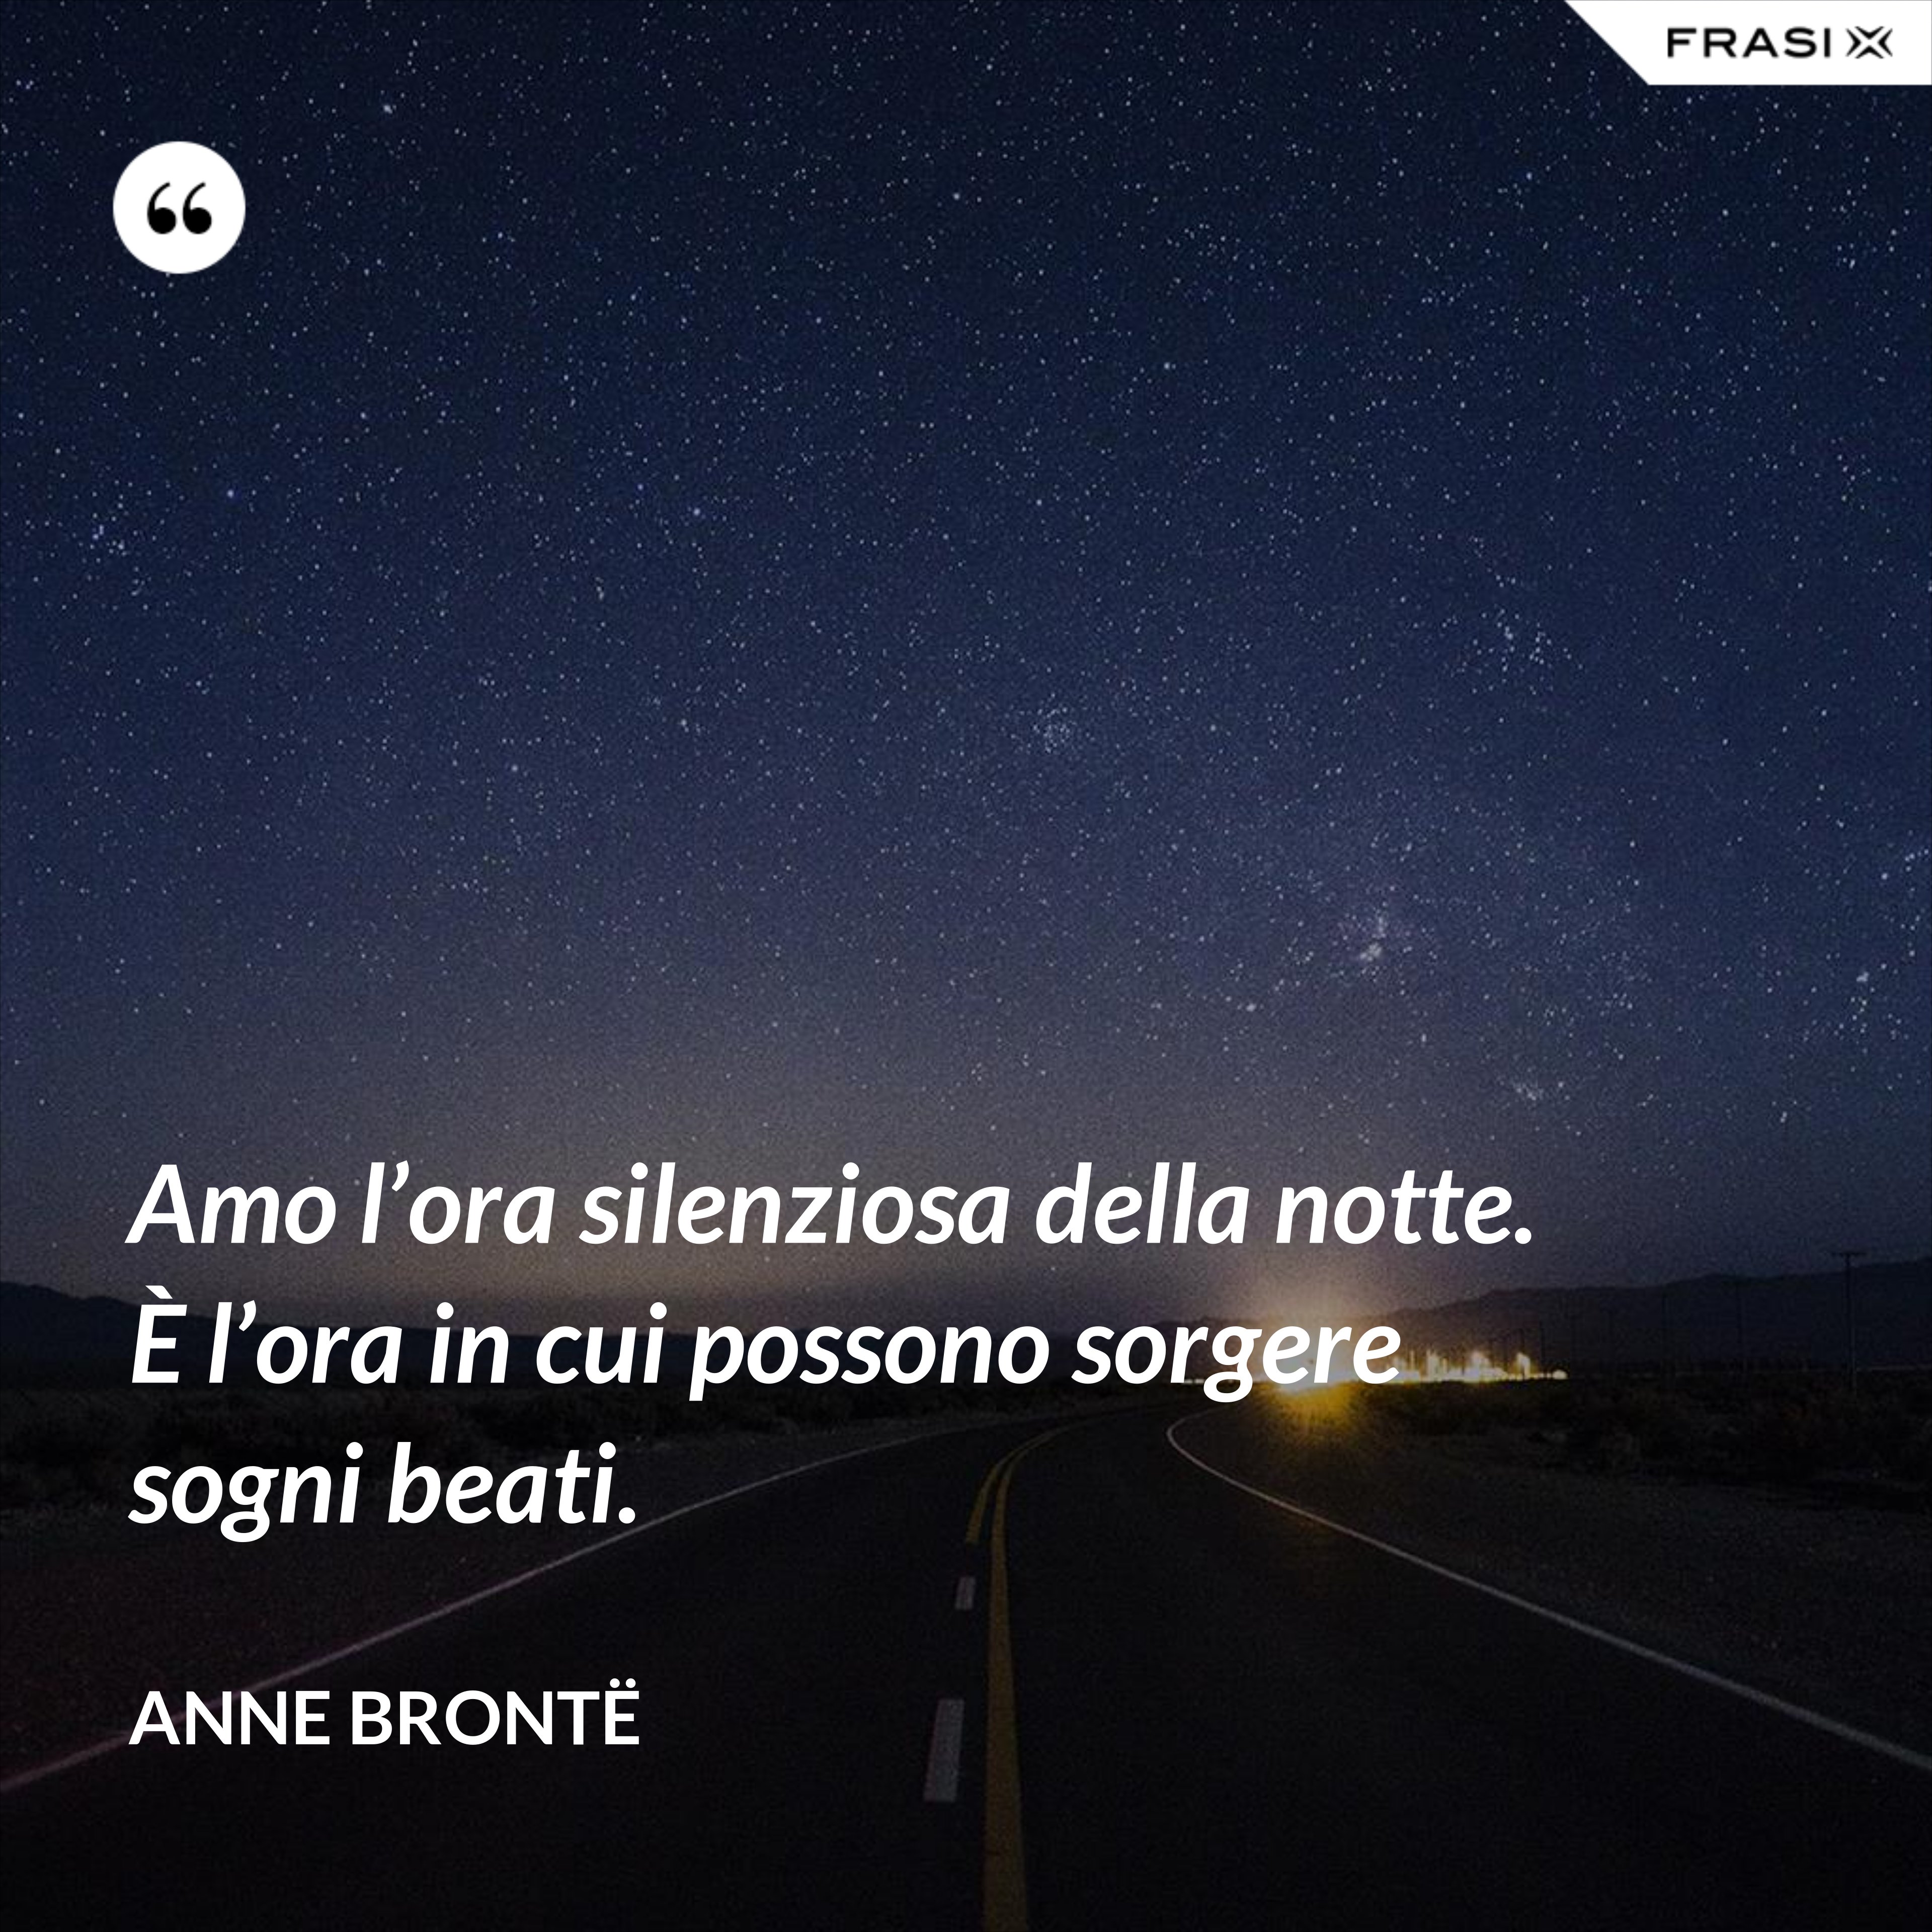 Amo l’ora silenziosa della notte. È l’ora in cui possono sorgere sogni beati. - Anne Brontë